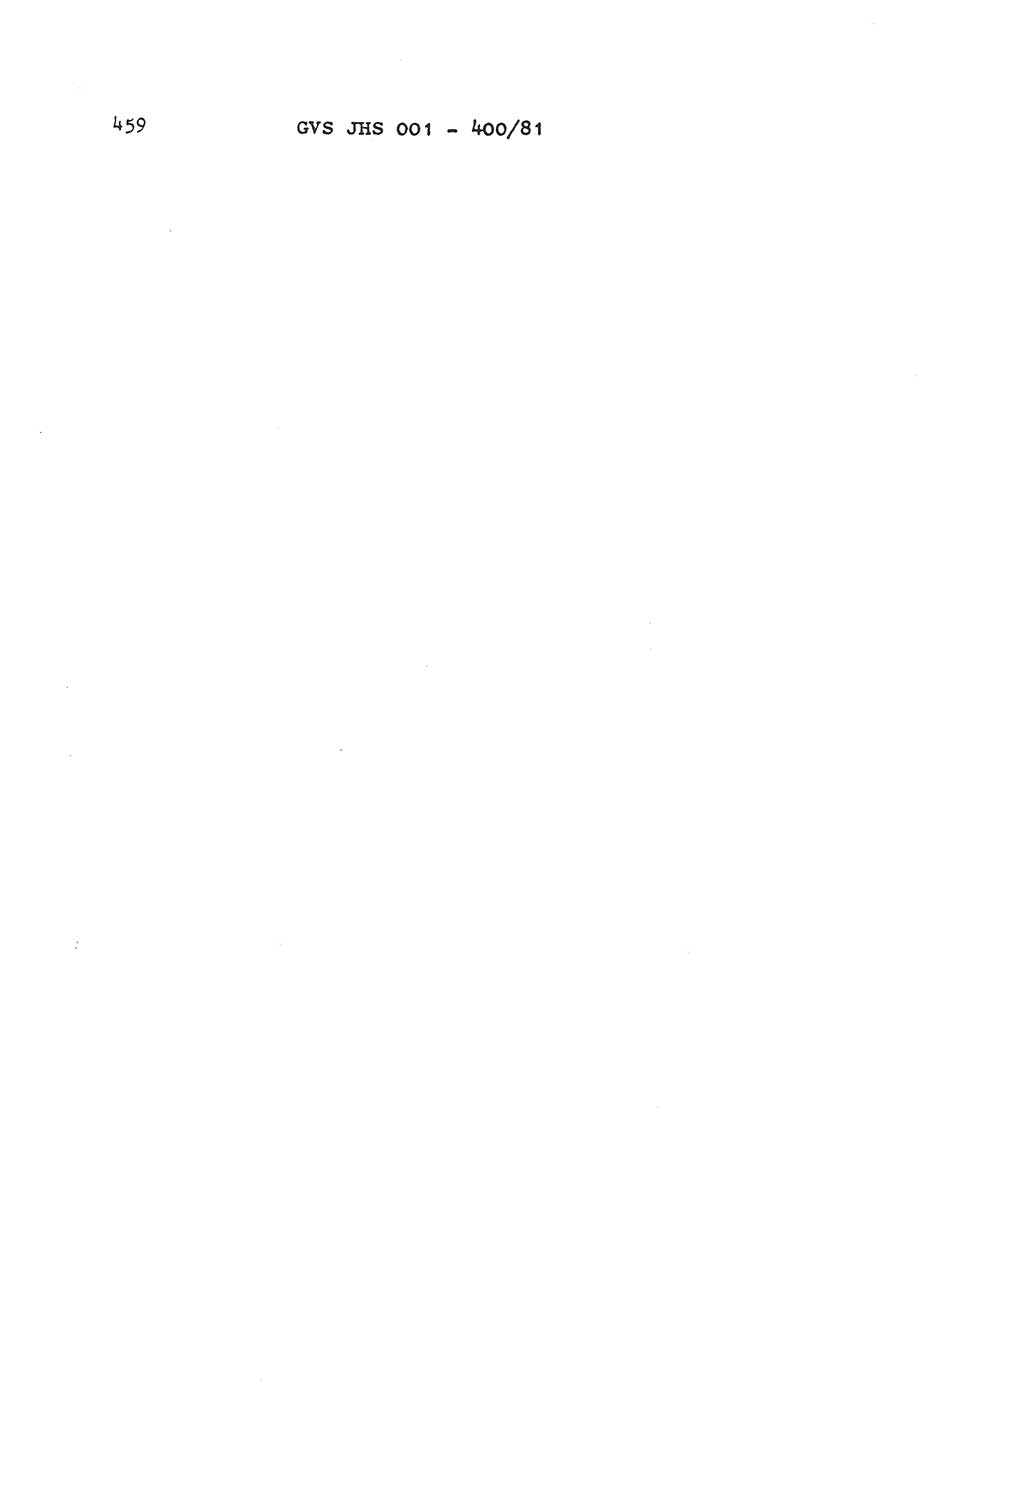 Wörterbuch der politisch-operativen Arbeit, Ministerium für Staatssicherheit (MfS) [Deutsche Demokratische Republik (DDR)], Juristische Hochschule (JHS), Geheime Verschlußsache (GVS) o001-400/81, Potsdam 1985, Blatt 459 (Wb. pol.-op. Arb. MfS DDR JHS GVS o001-400/81 1985, Bl. 459)